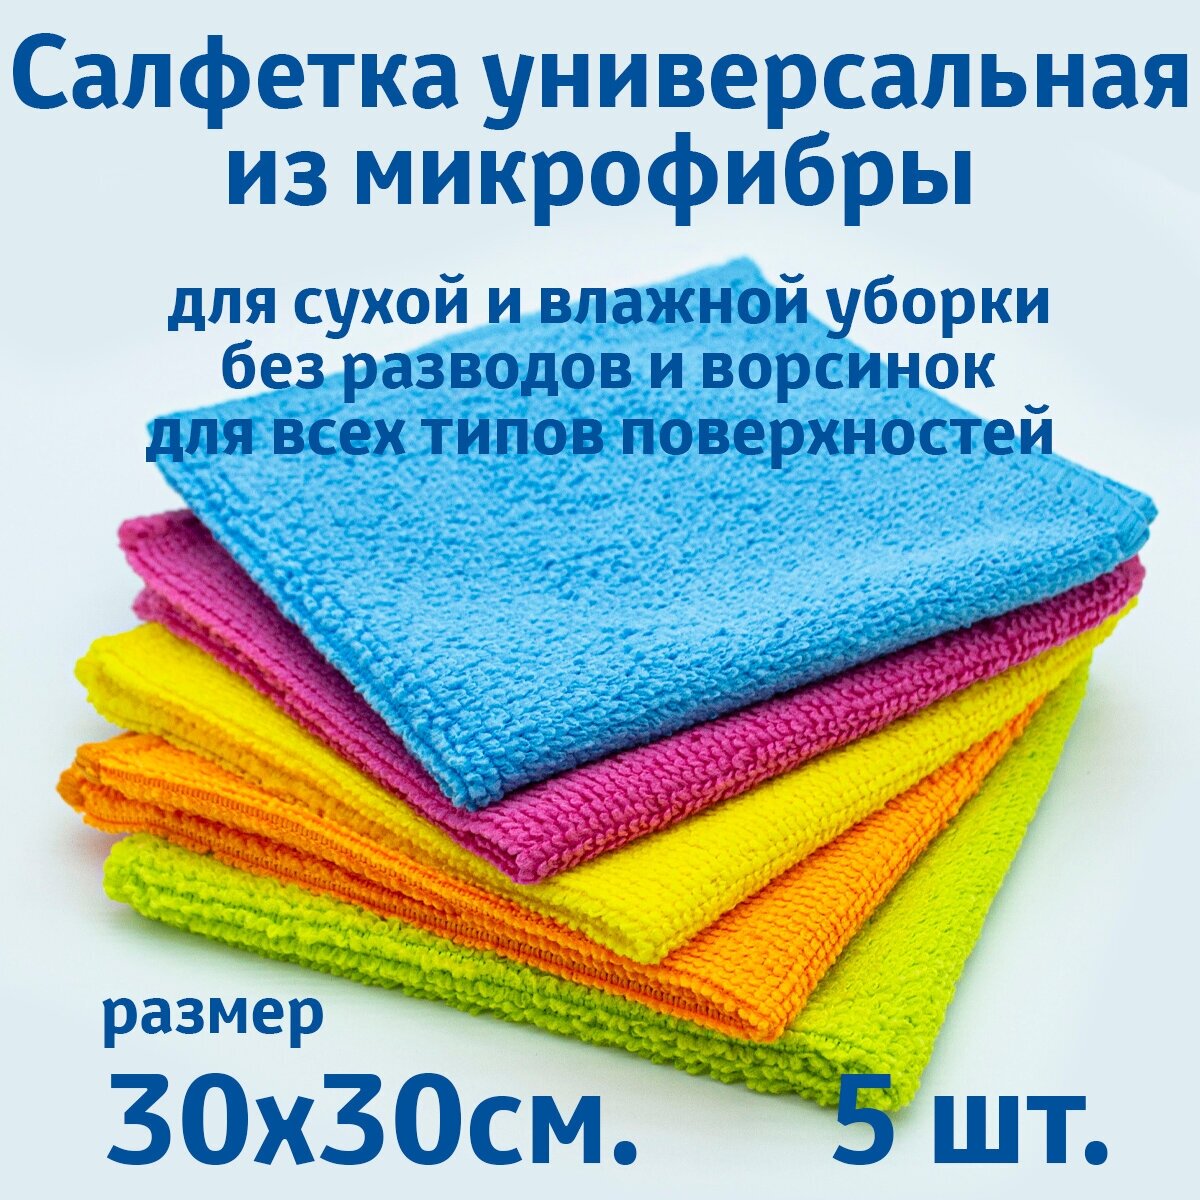 Салфетки для уборки из микрофибры универсальные 5 шт. в упаковке размер 30х30см.